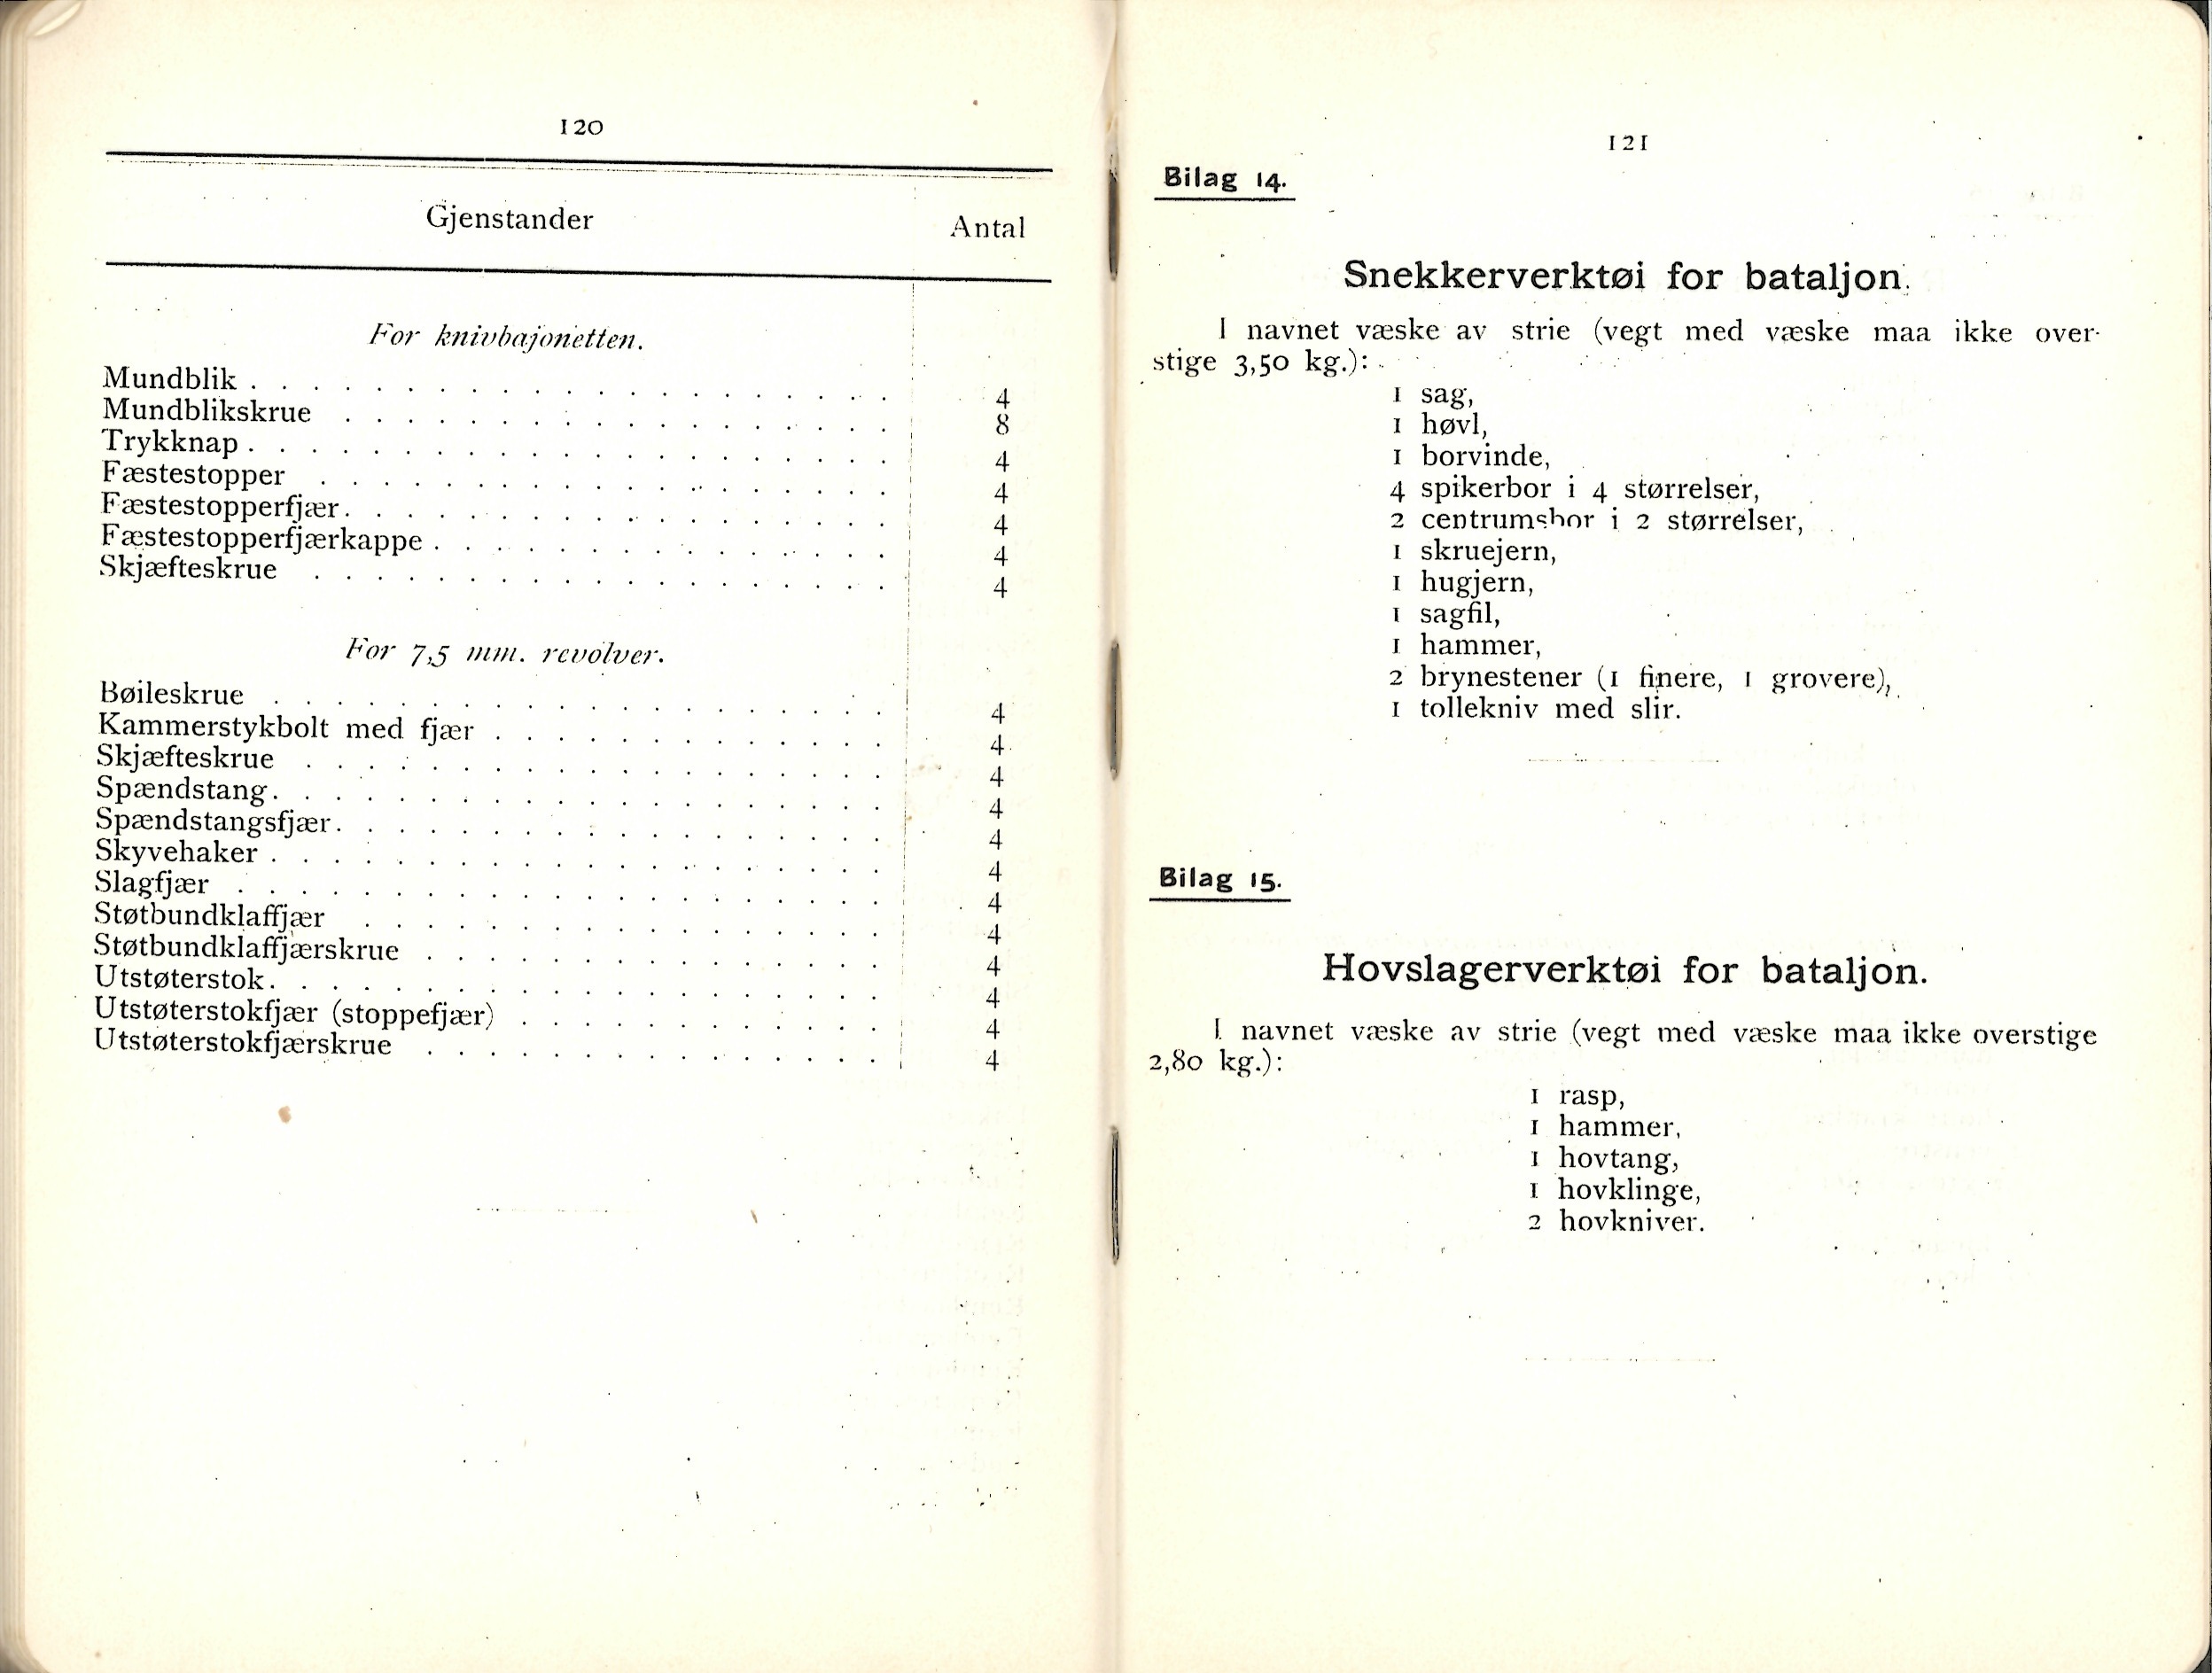 ./doc/reglement/Utrustning/Utrustnings-og-Pakningsplan-1917-17.jpg